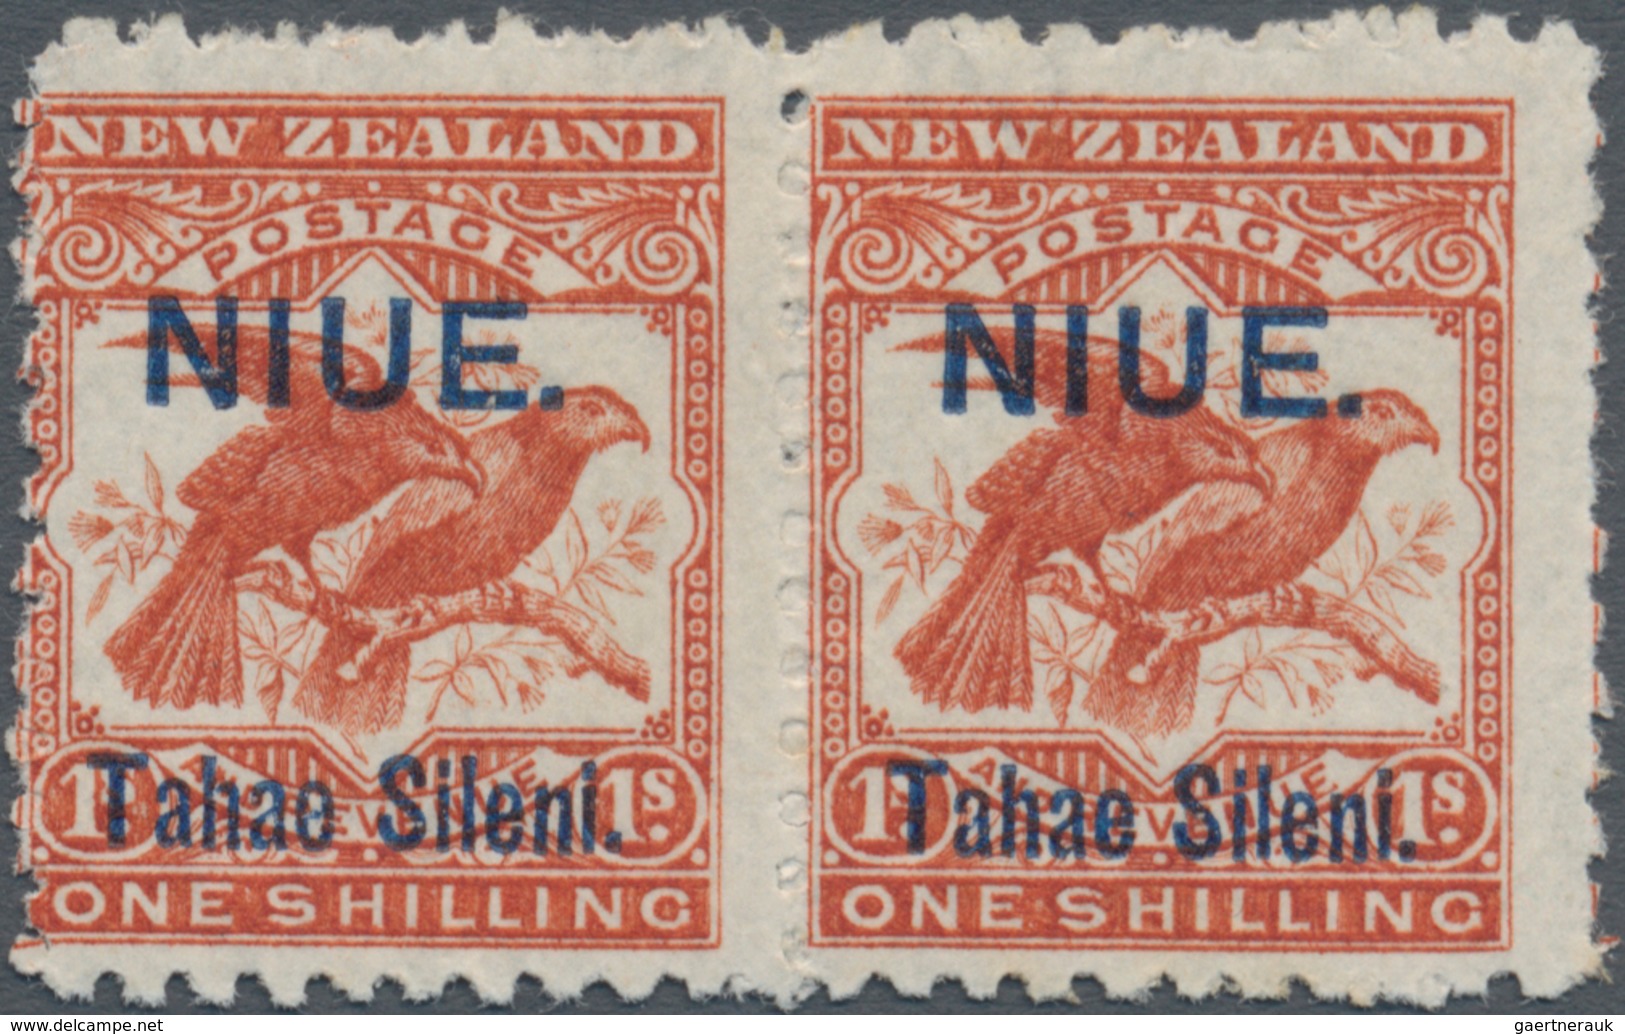 Niue: 1903, "NIUE Tahe Sileni" Joined Type Overprinted Pair 1 Sh. Brown-red, Mint Hinged, Very Fresh - Niue